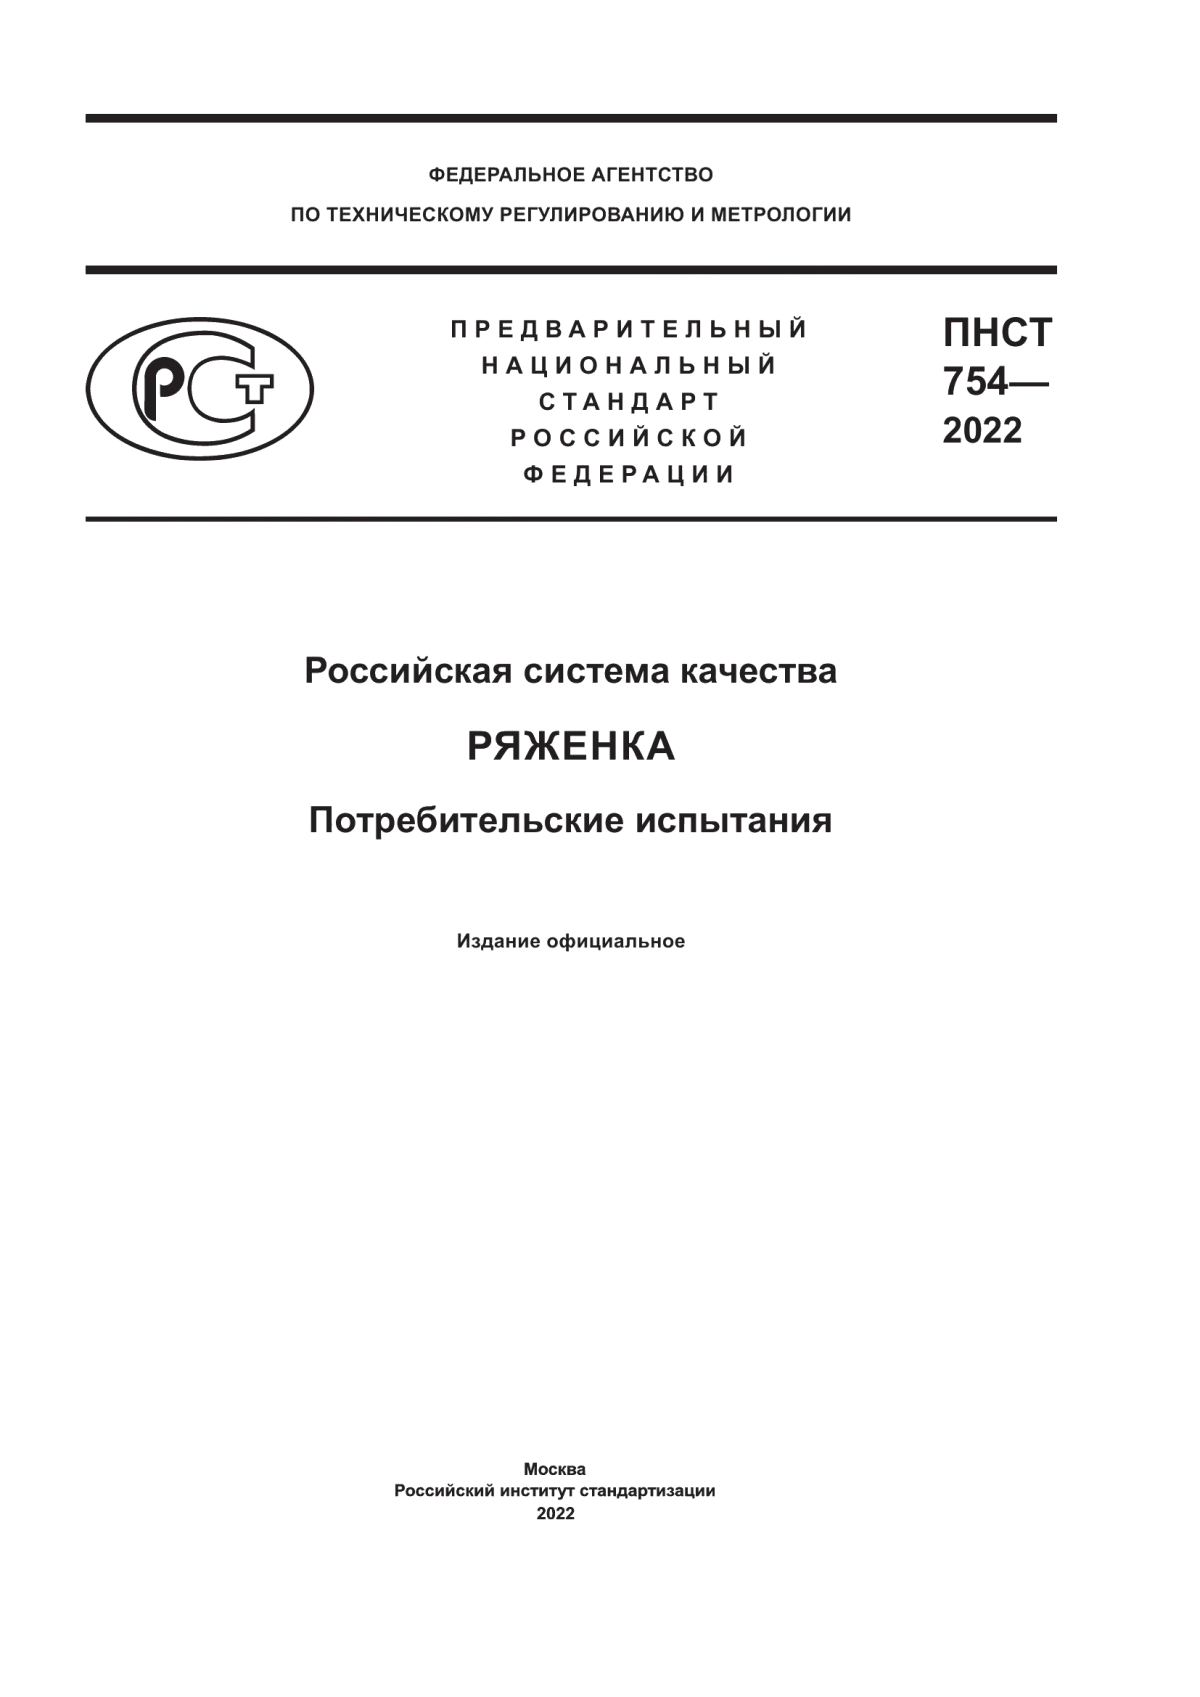 ПНСТ 754-2022 Российская система качества. Ряженка. Потребительские испытания